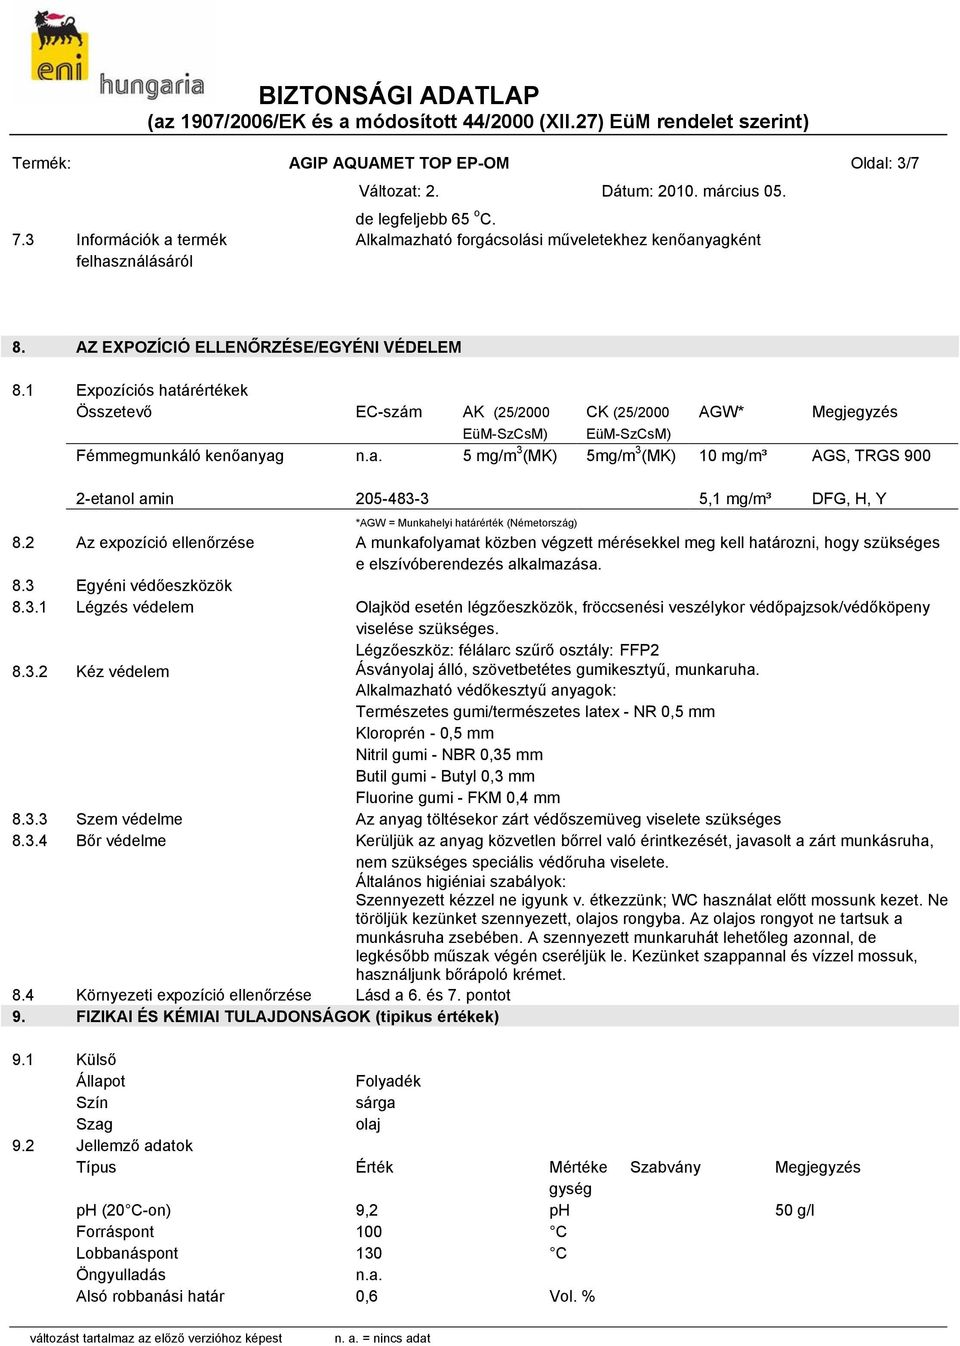 1 Expozíciós határértékek Összetevő EC-szám AK (25/2000 EüM-SzCsM) CK (25/2000 EüM-SzCsM) AGW* Fémmegmunkáló kenőanyag 5 mg/m 3 (MK) 5mg/m 3 (MK) 10 mg/m³ Megjegyzés AGS, TRGS 900 2-etanol amin